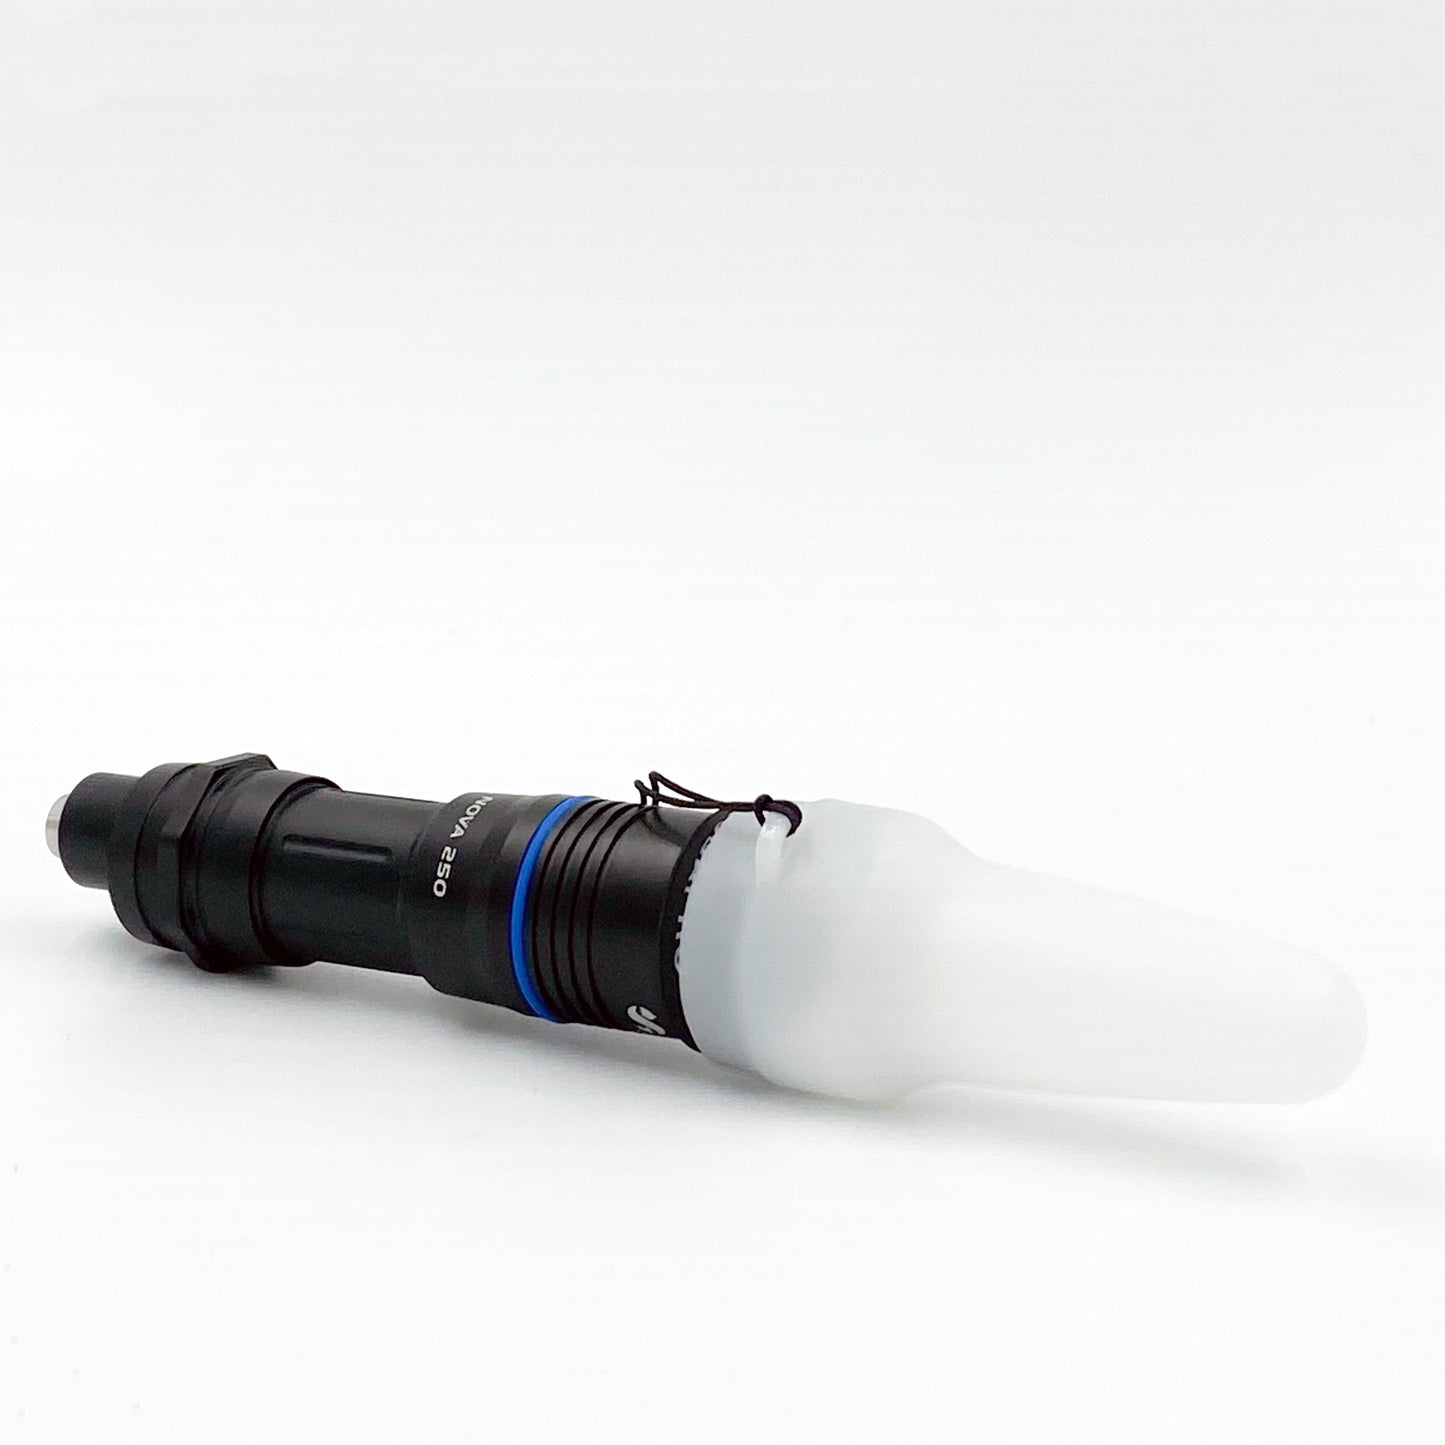 Scubapro Nova 250 Dive Light / Torch - 250 Lumens